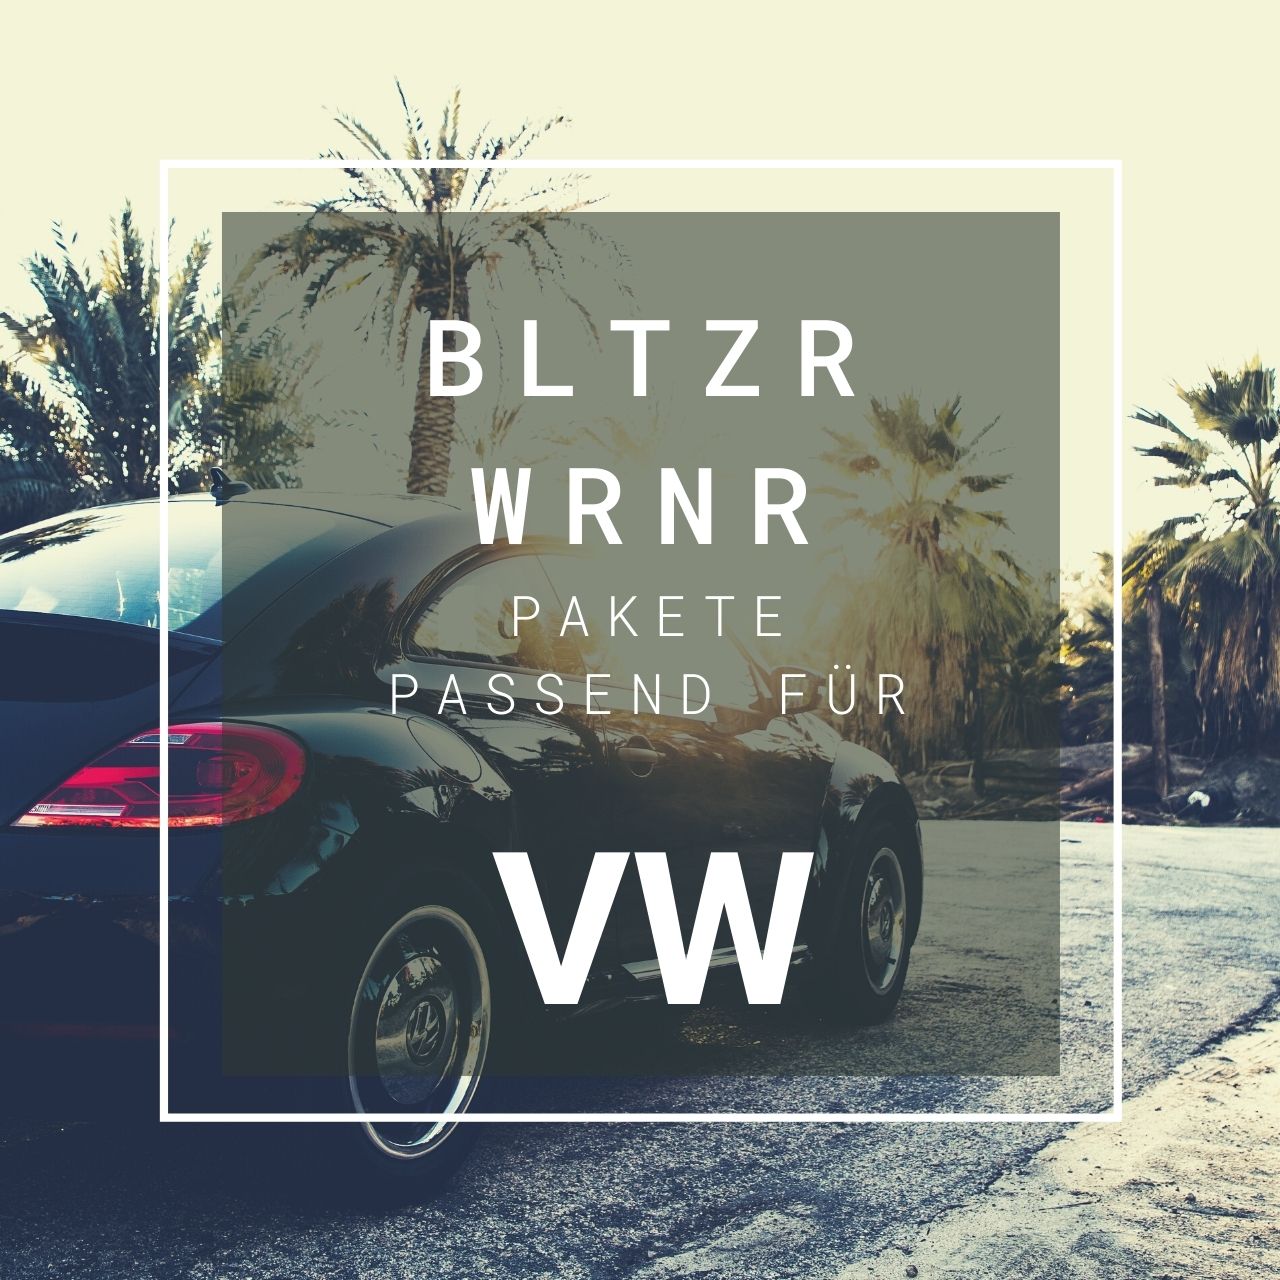 VW Blitzerwarner Pakete - BLTZR WRNR